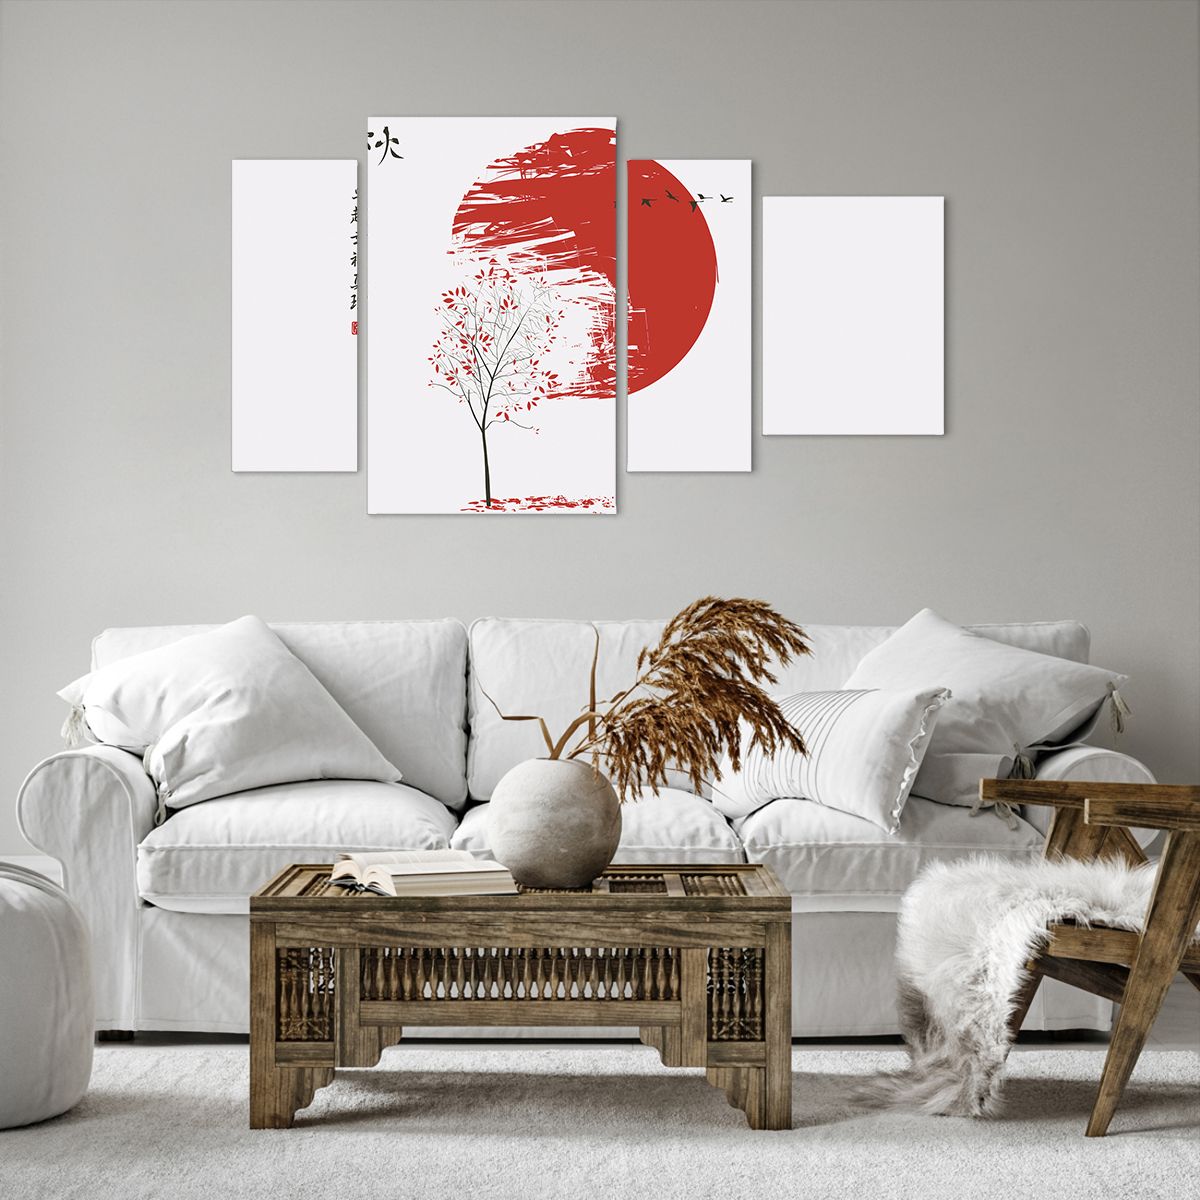 Bild auf Leinwand Abstraktion, Bild auf Leinwand Japan, Bild auf Leinwand Kirschblüte, Bild auf Leinwand Grafik, Bild auf Leinwand Der Sonnenuntergang